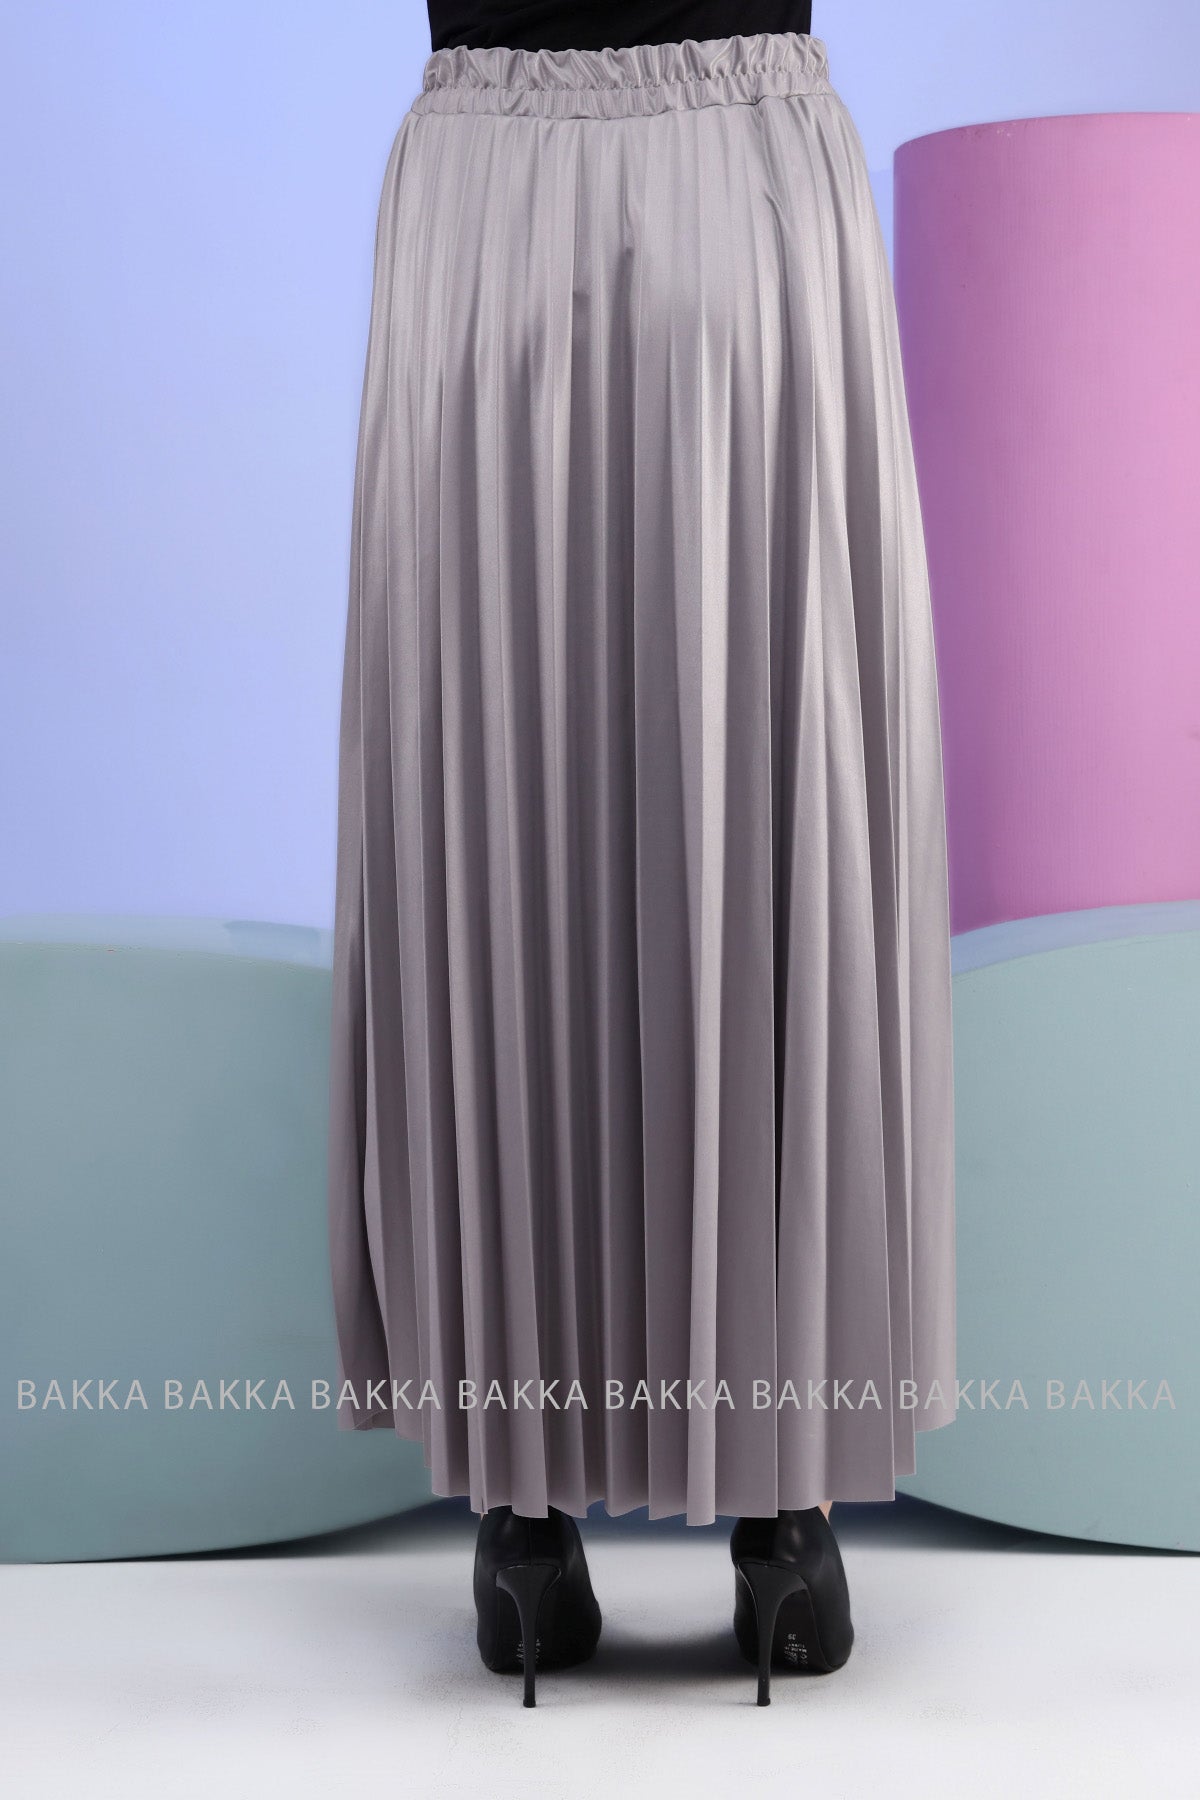 Skirt - 9007 - Gray - bakkaclothing